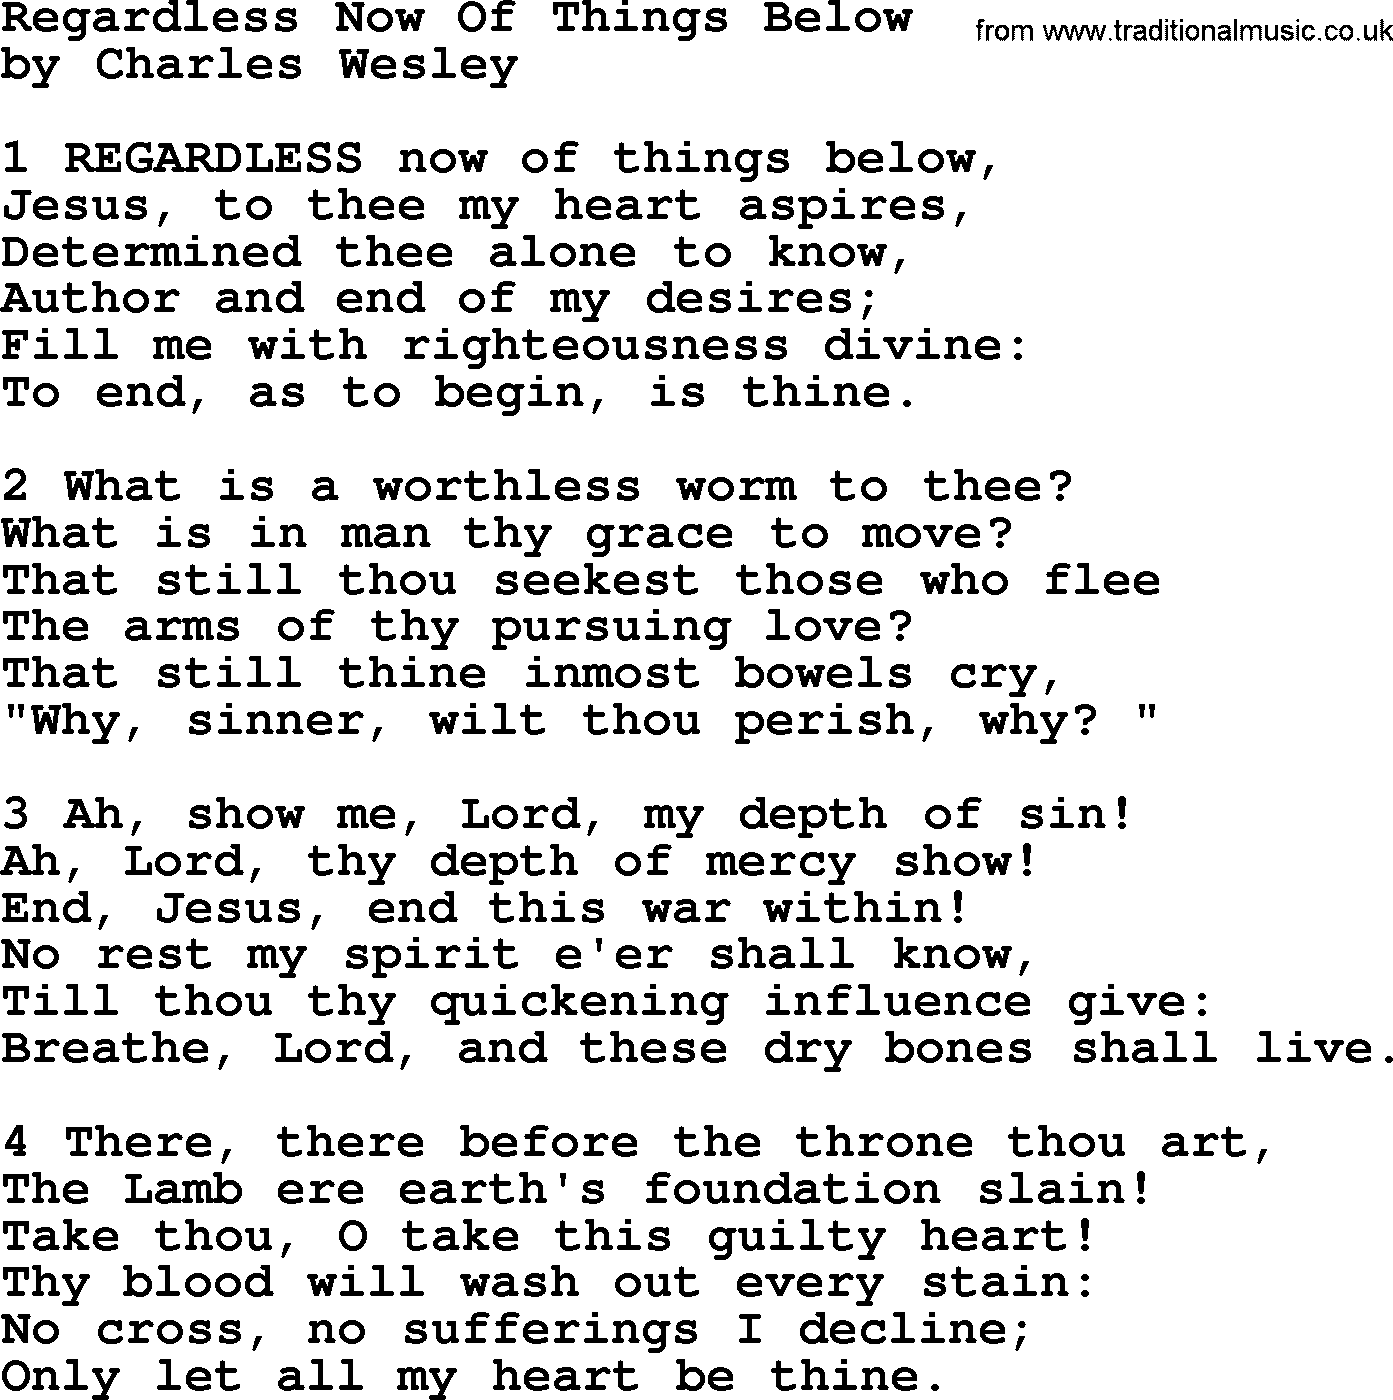 Charles Wesley hymn: Regardless Now Of Things Below, lyrics